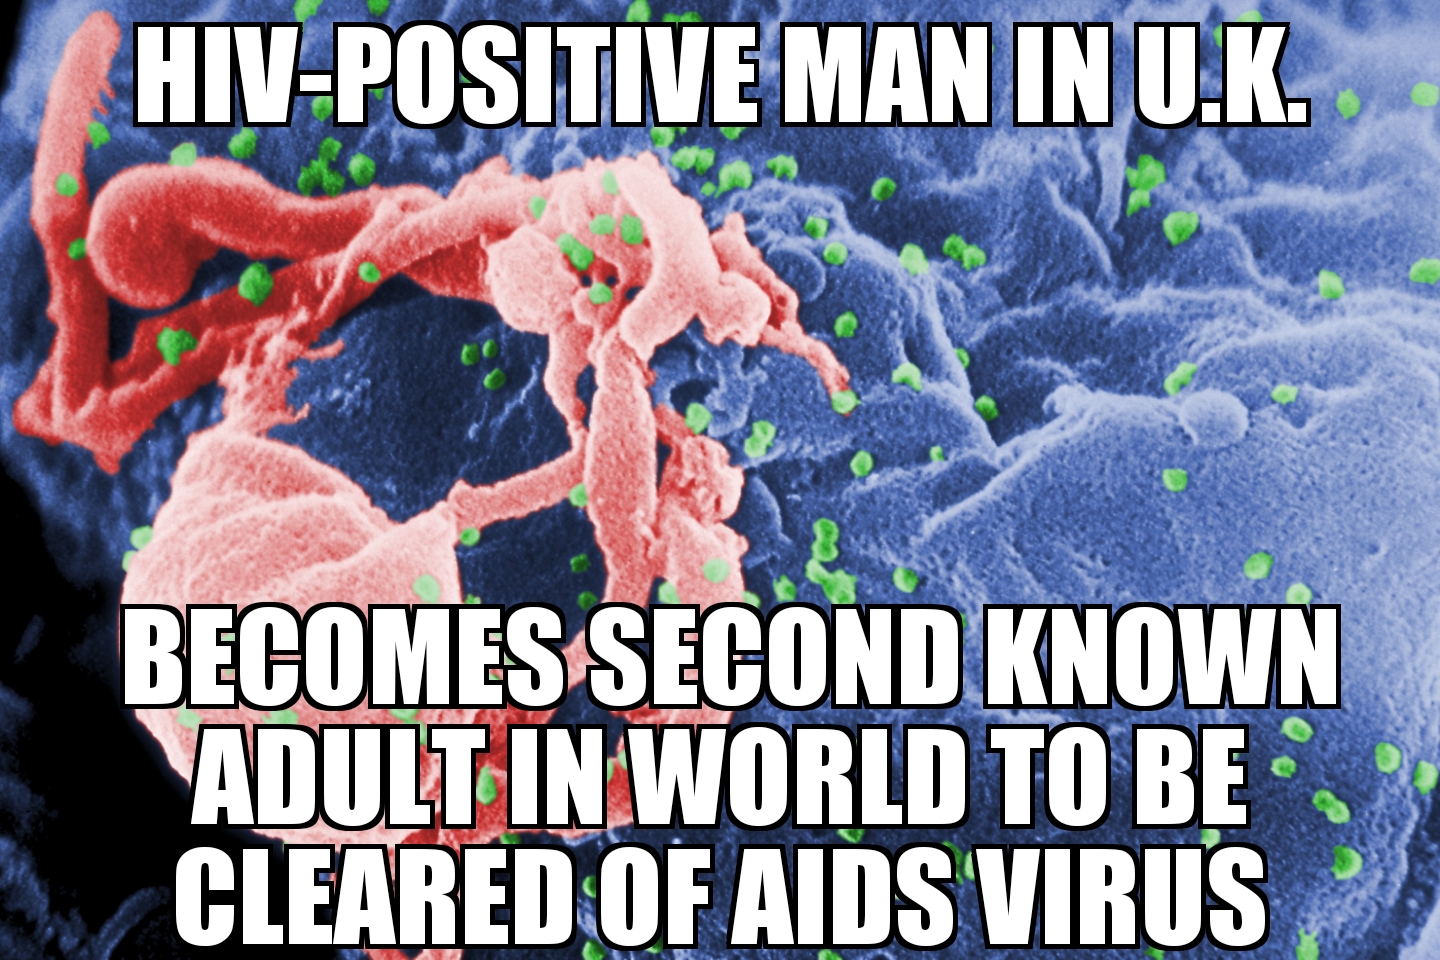 U.K. man cleared of AIDS virus